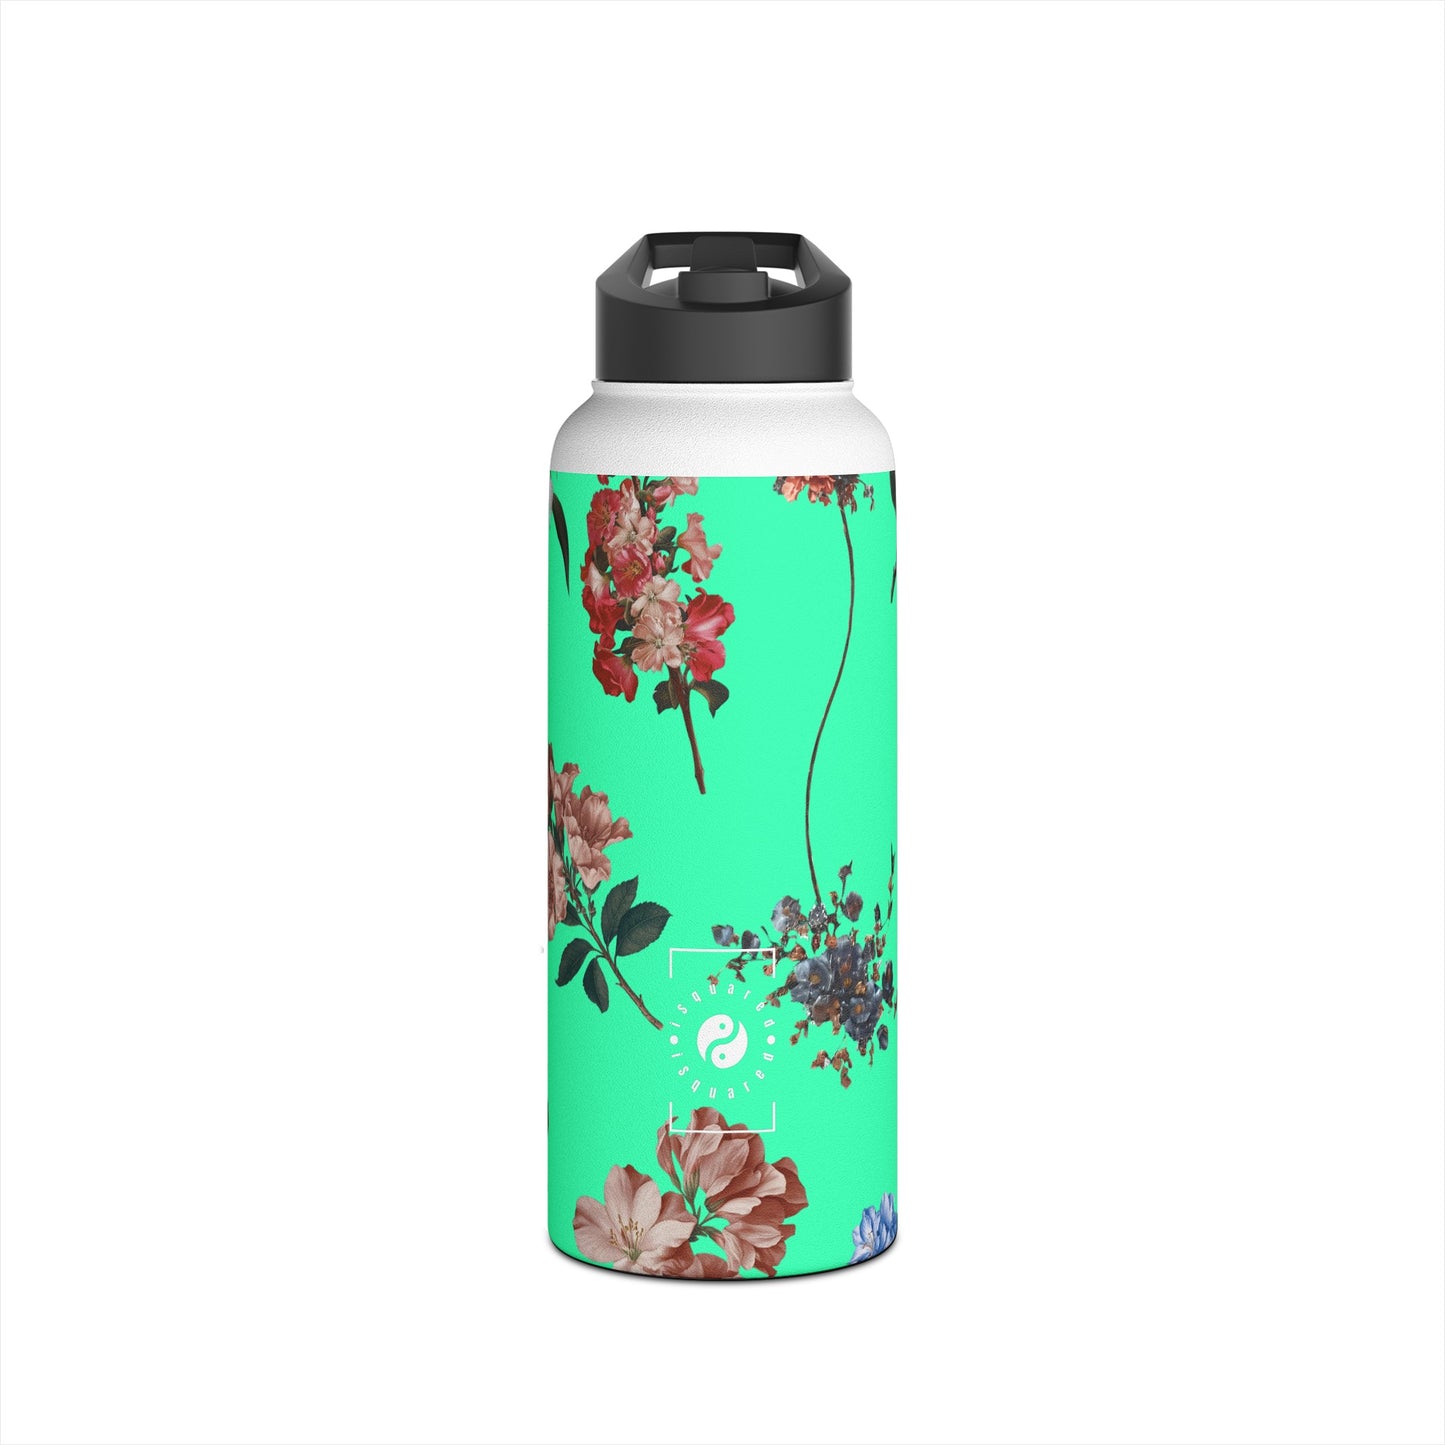 Botanicals on Turquoise - Water Bottle